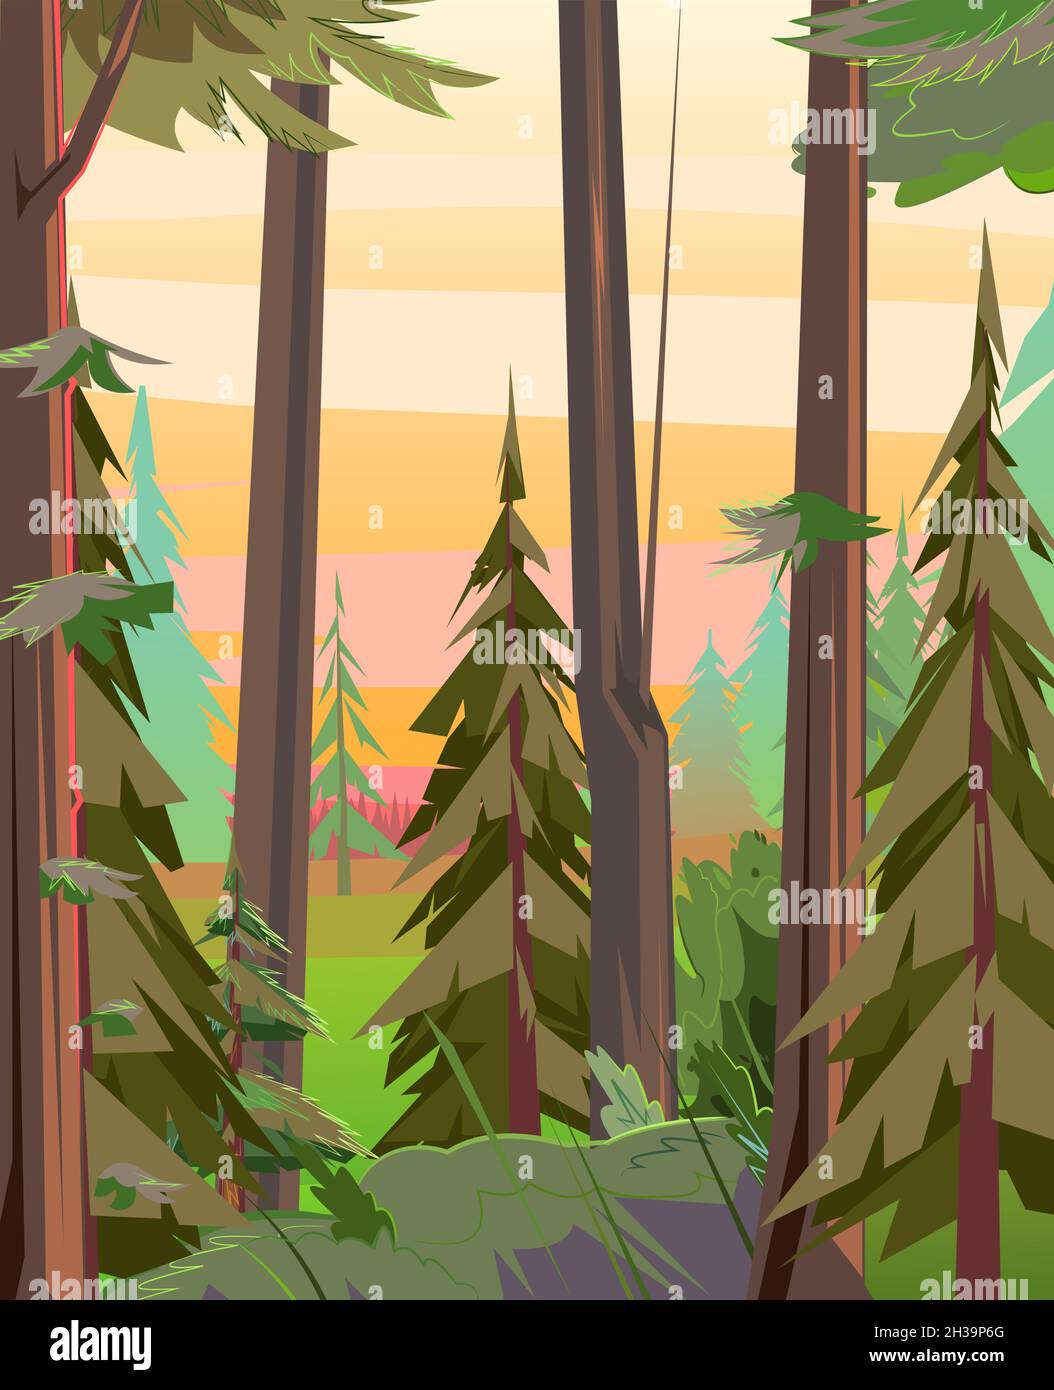 Abends im Wald. Morgen ländliche Landschaft mit Bäumen. Illustration im Cartoon-Stil flache Design. Vektor Stock Vektor